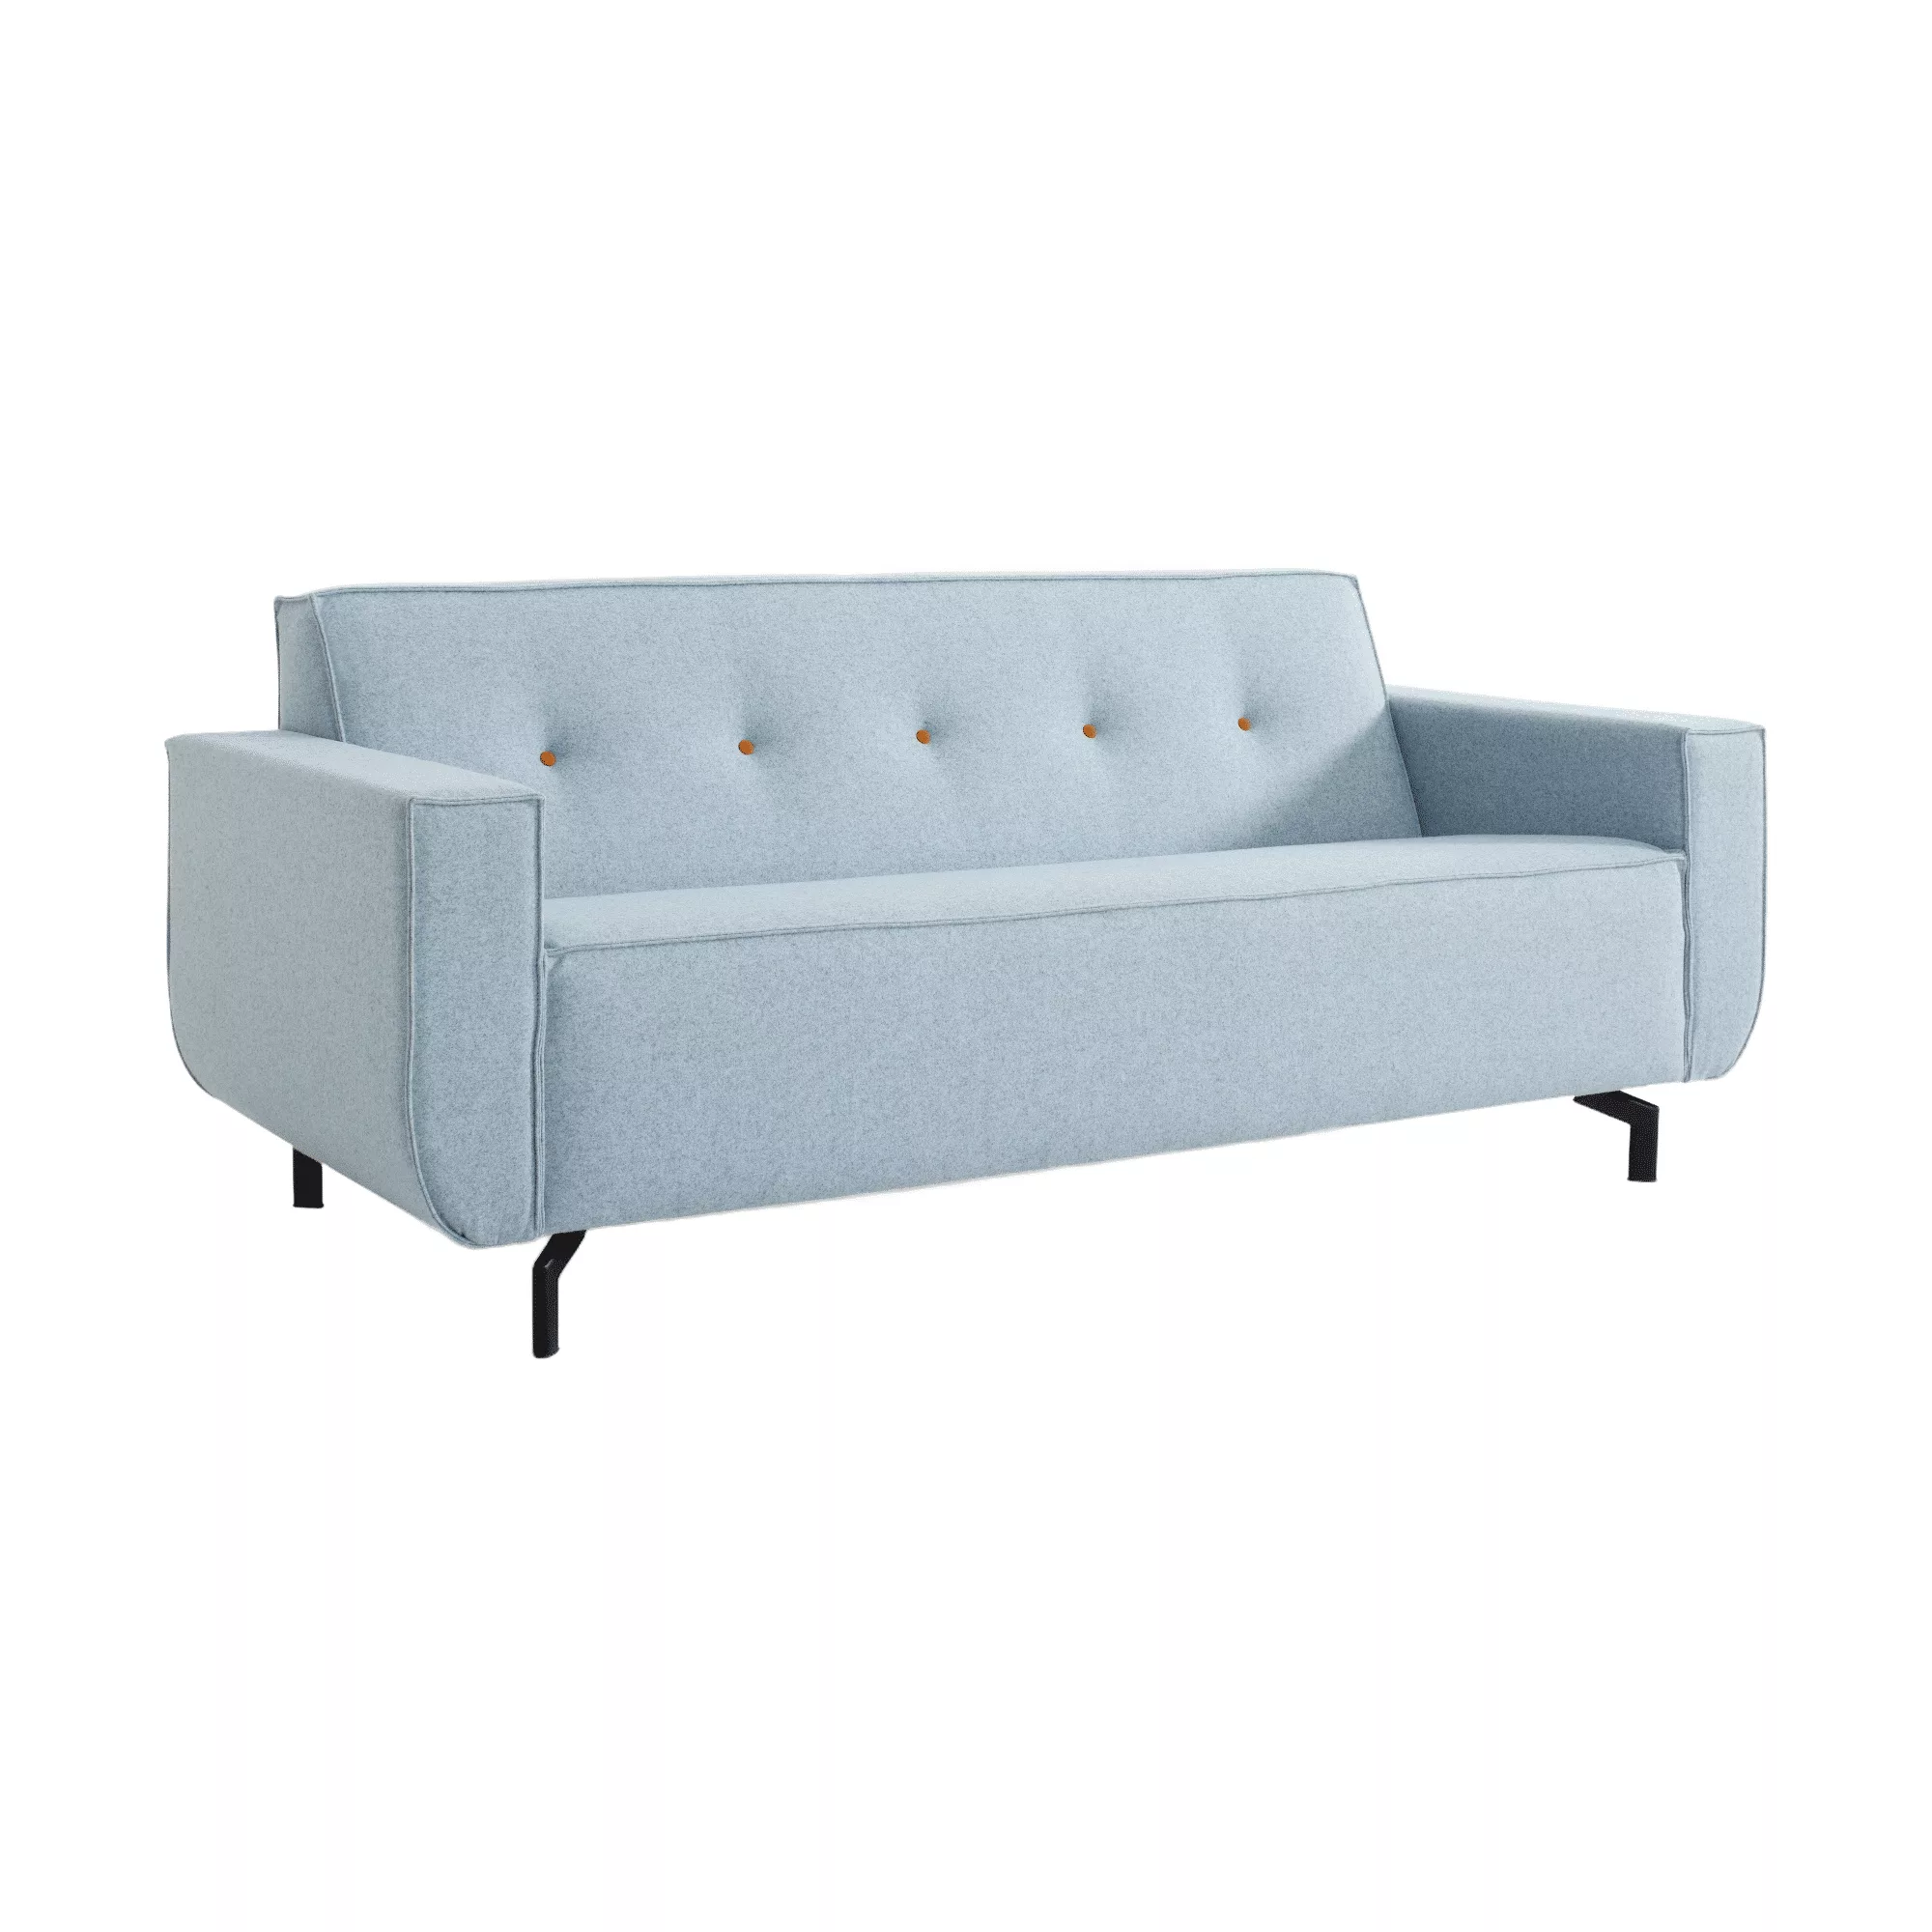 Lichtblauwe loungebank met afgeronde armleuningen, oranje sierknopen in de rug en design meubelpoten.